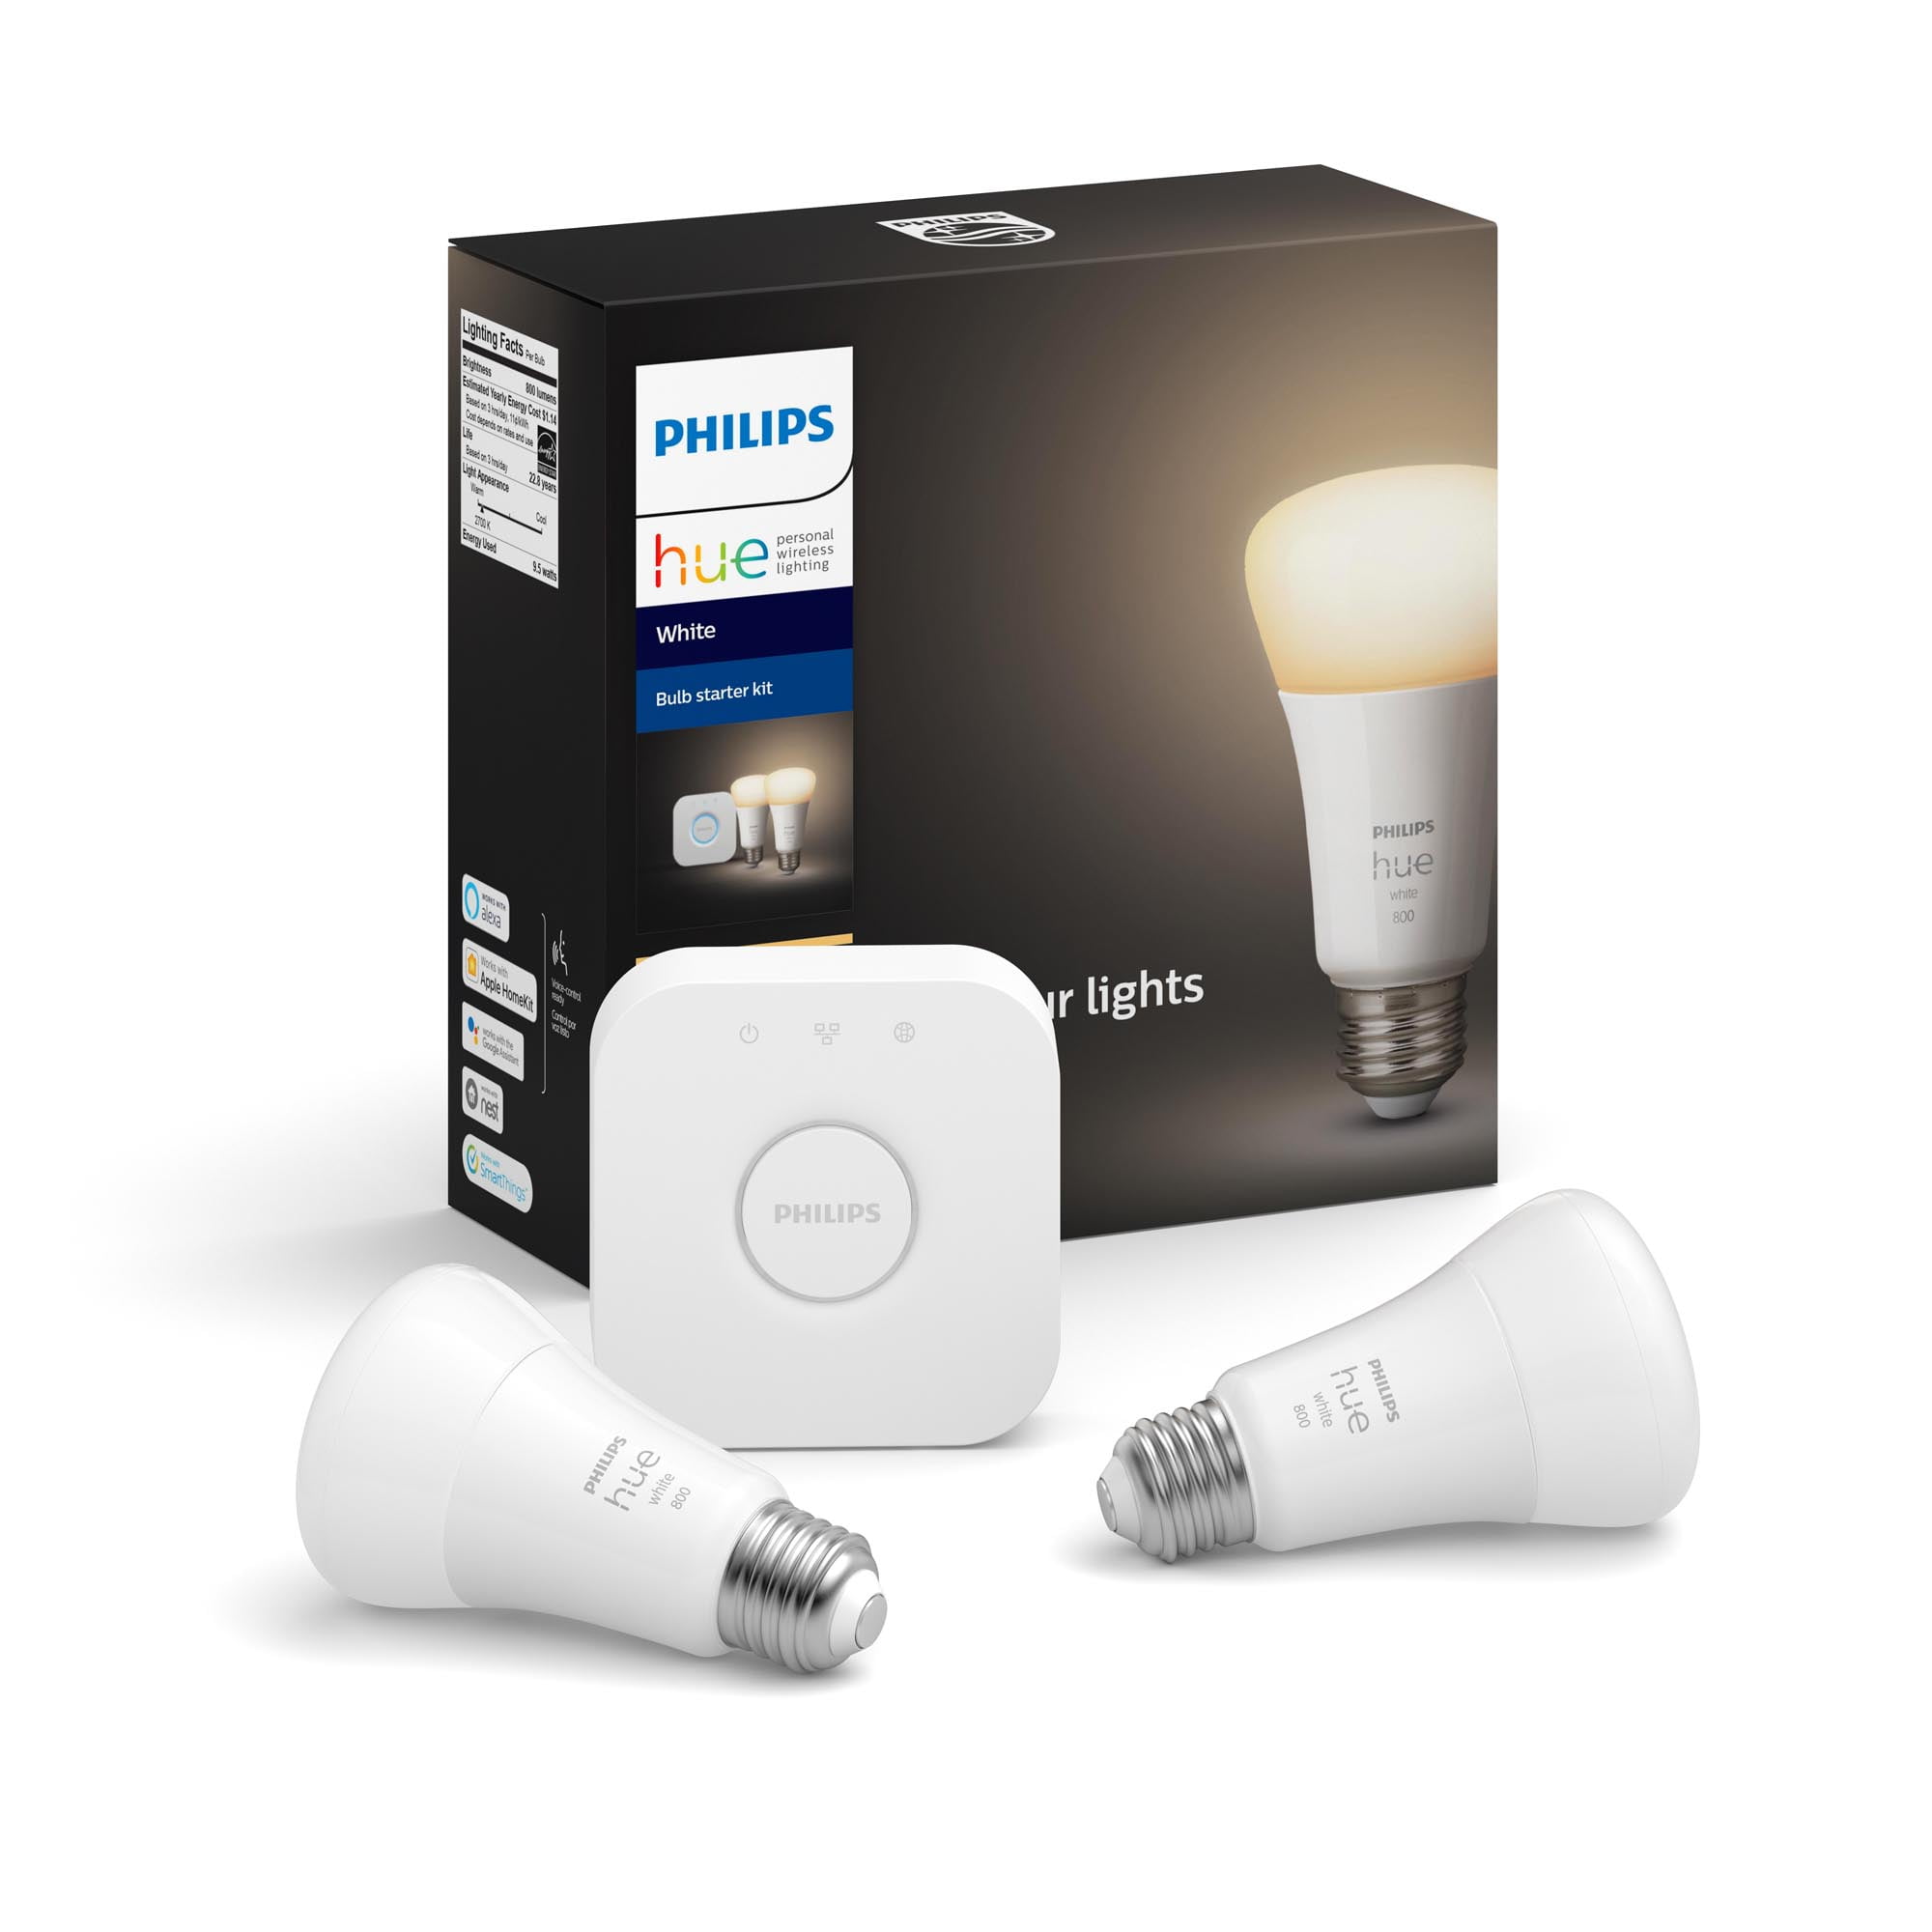 Philips Hue White Starter Kit 3 Bluetooth E27 - Philips Hue - Buy online